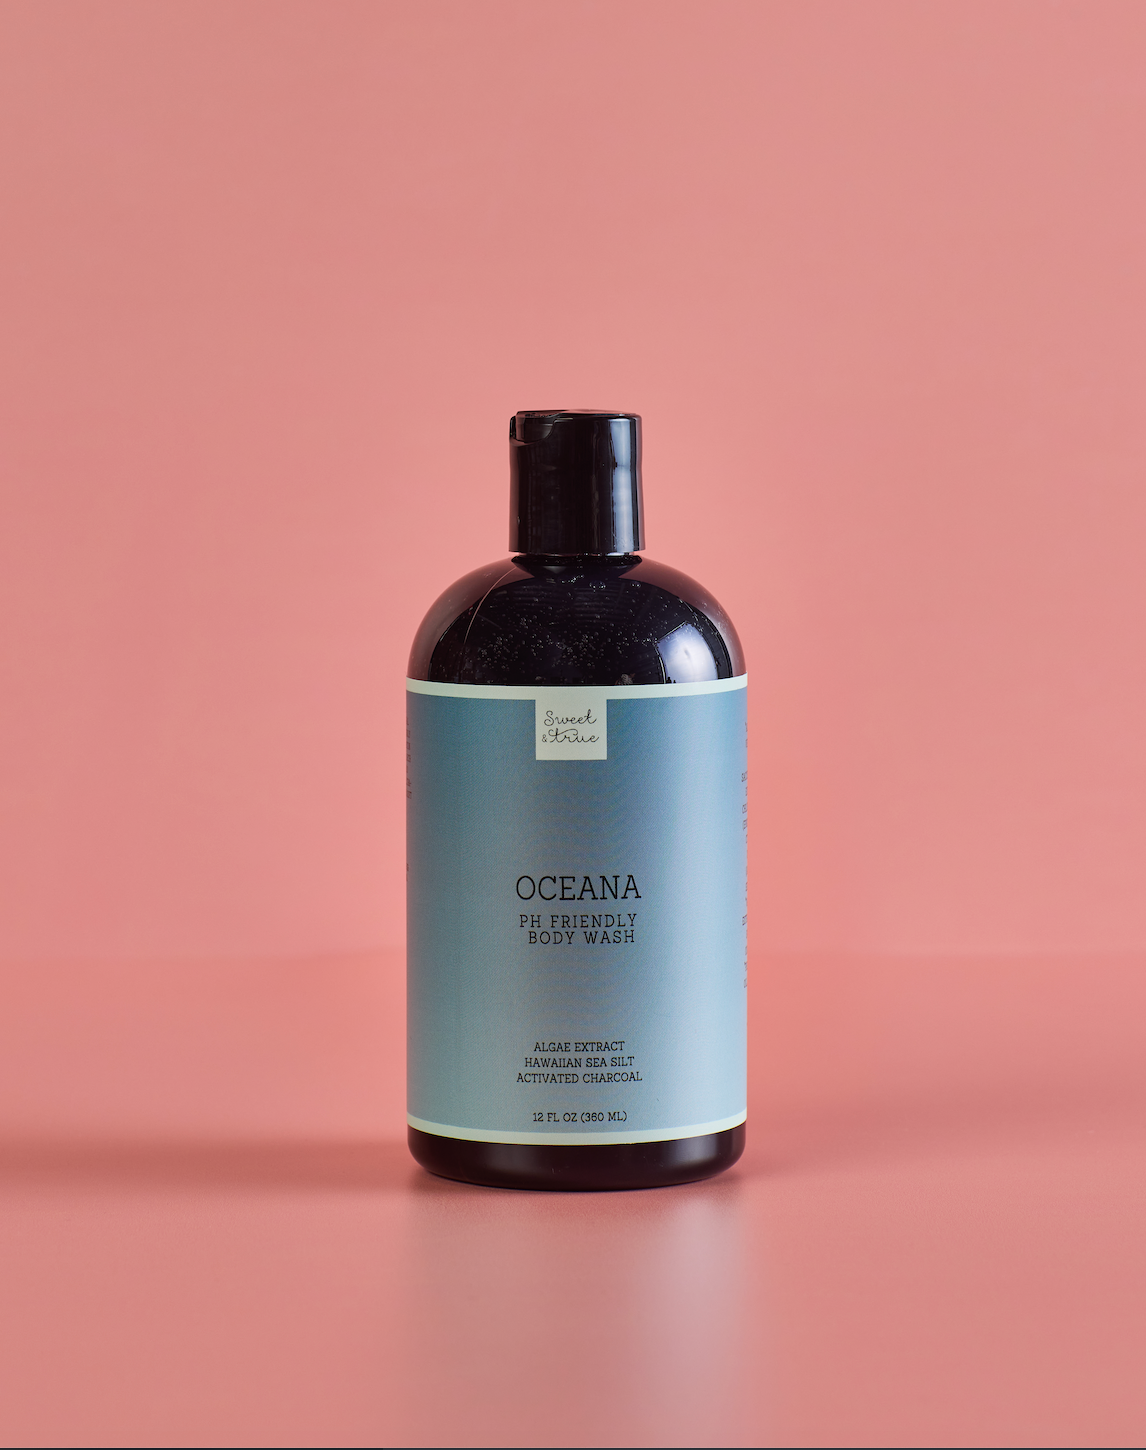 PRODUCTO NUEVO: Oceana pH Friendly Body Wash (12 fl oz)